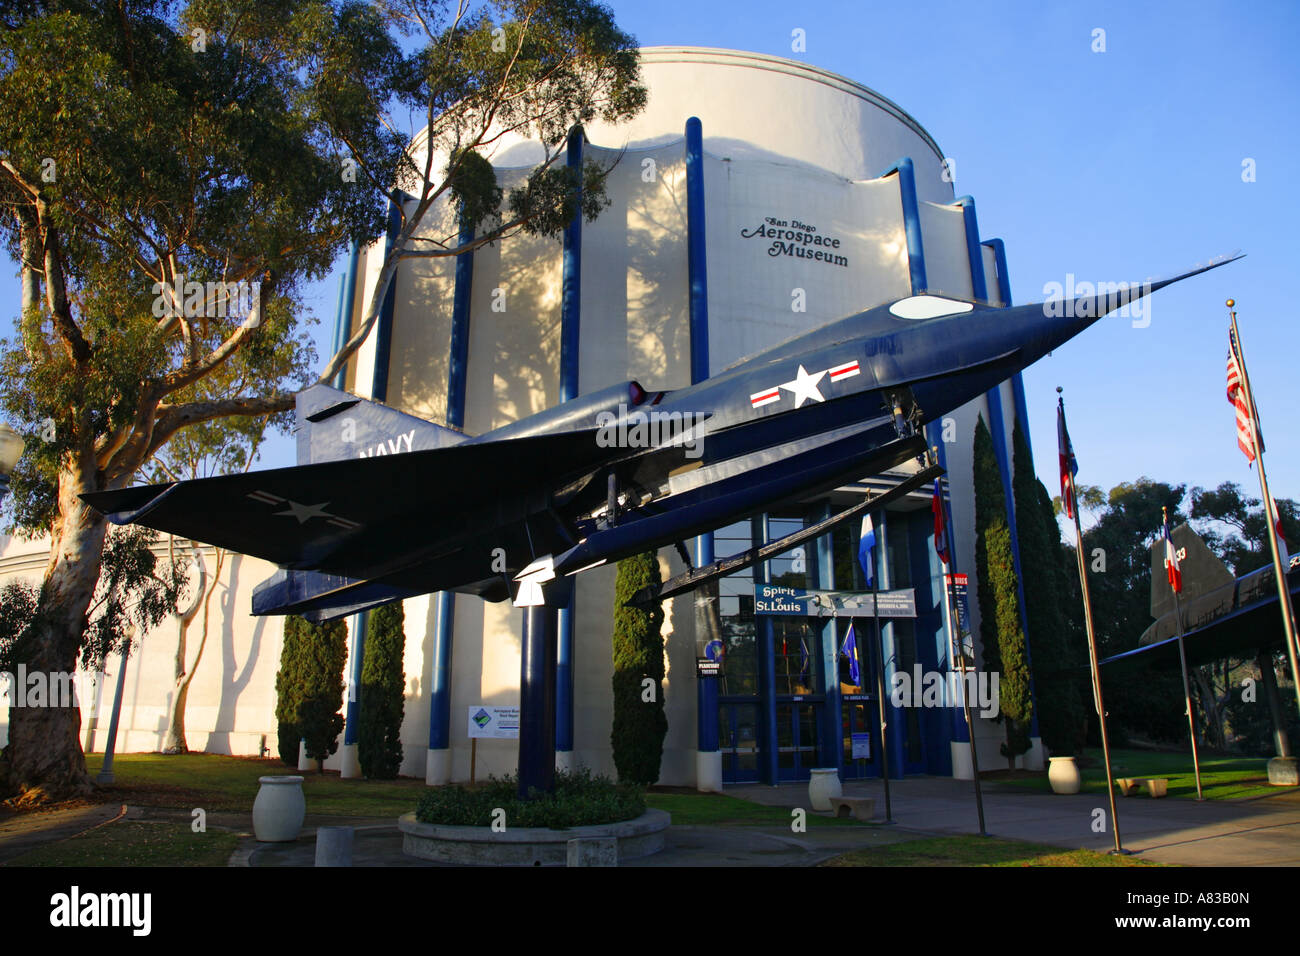 san-diego-aerospace-museum-balboa-park-san-diego-california-A83B0N.jpg